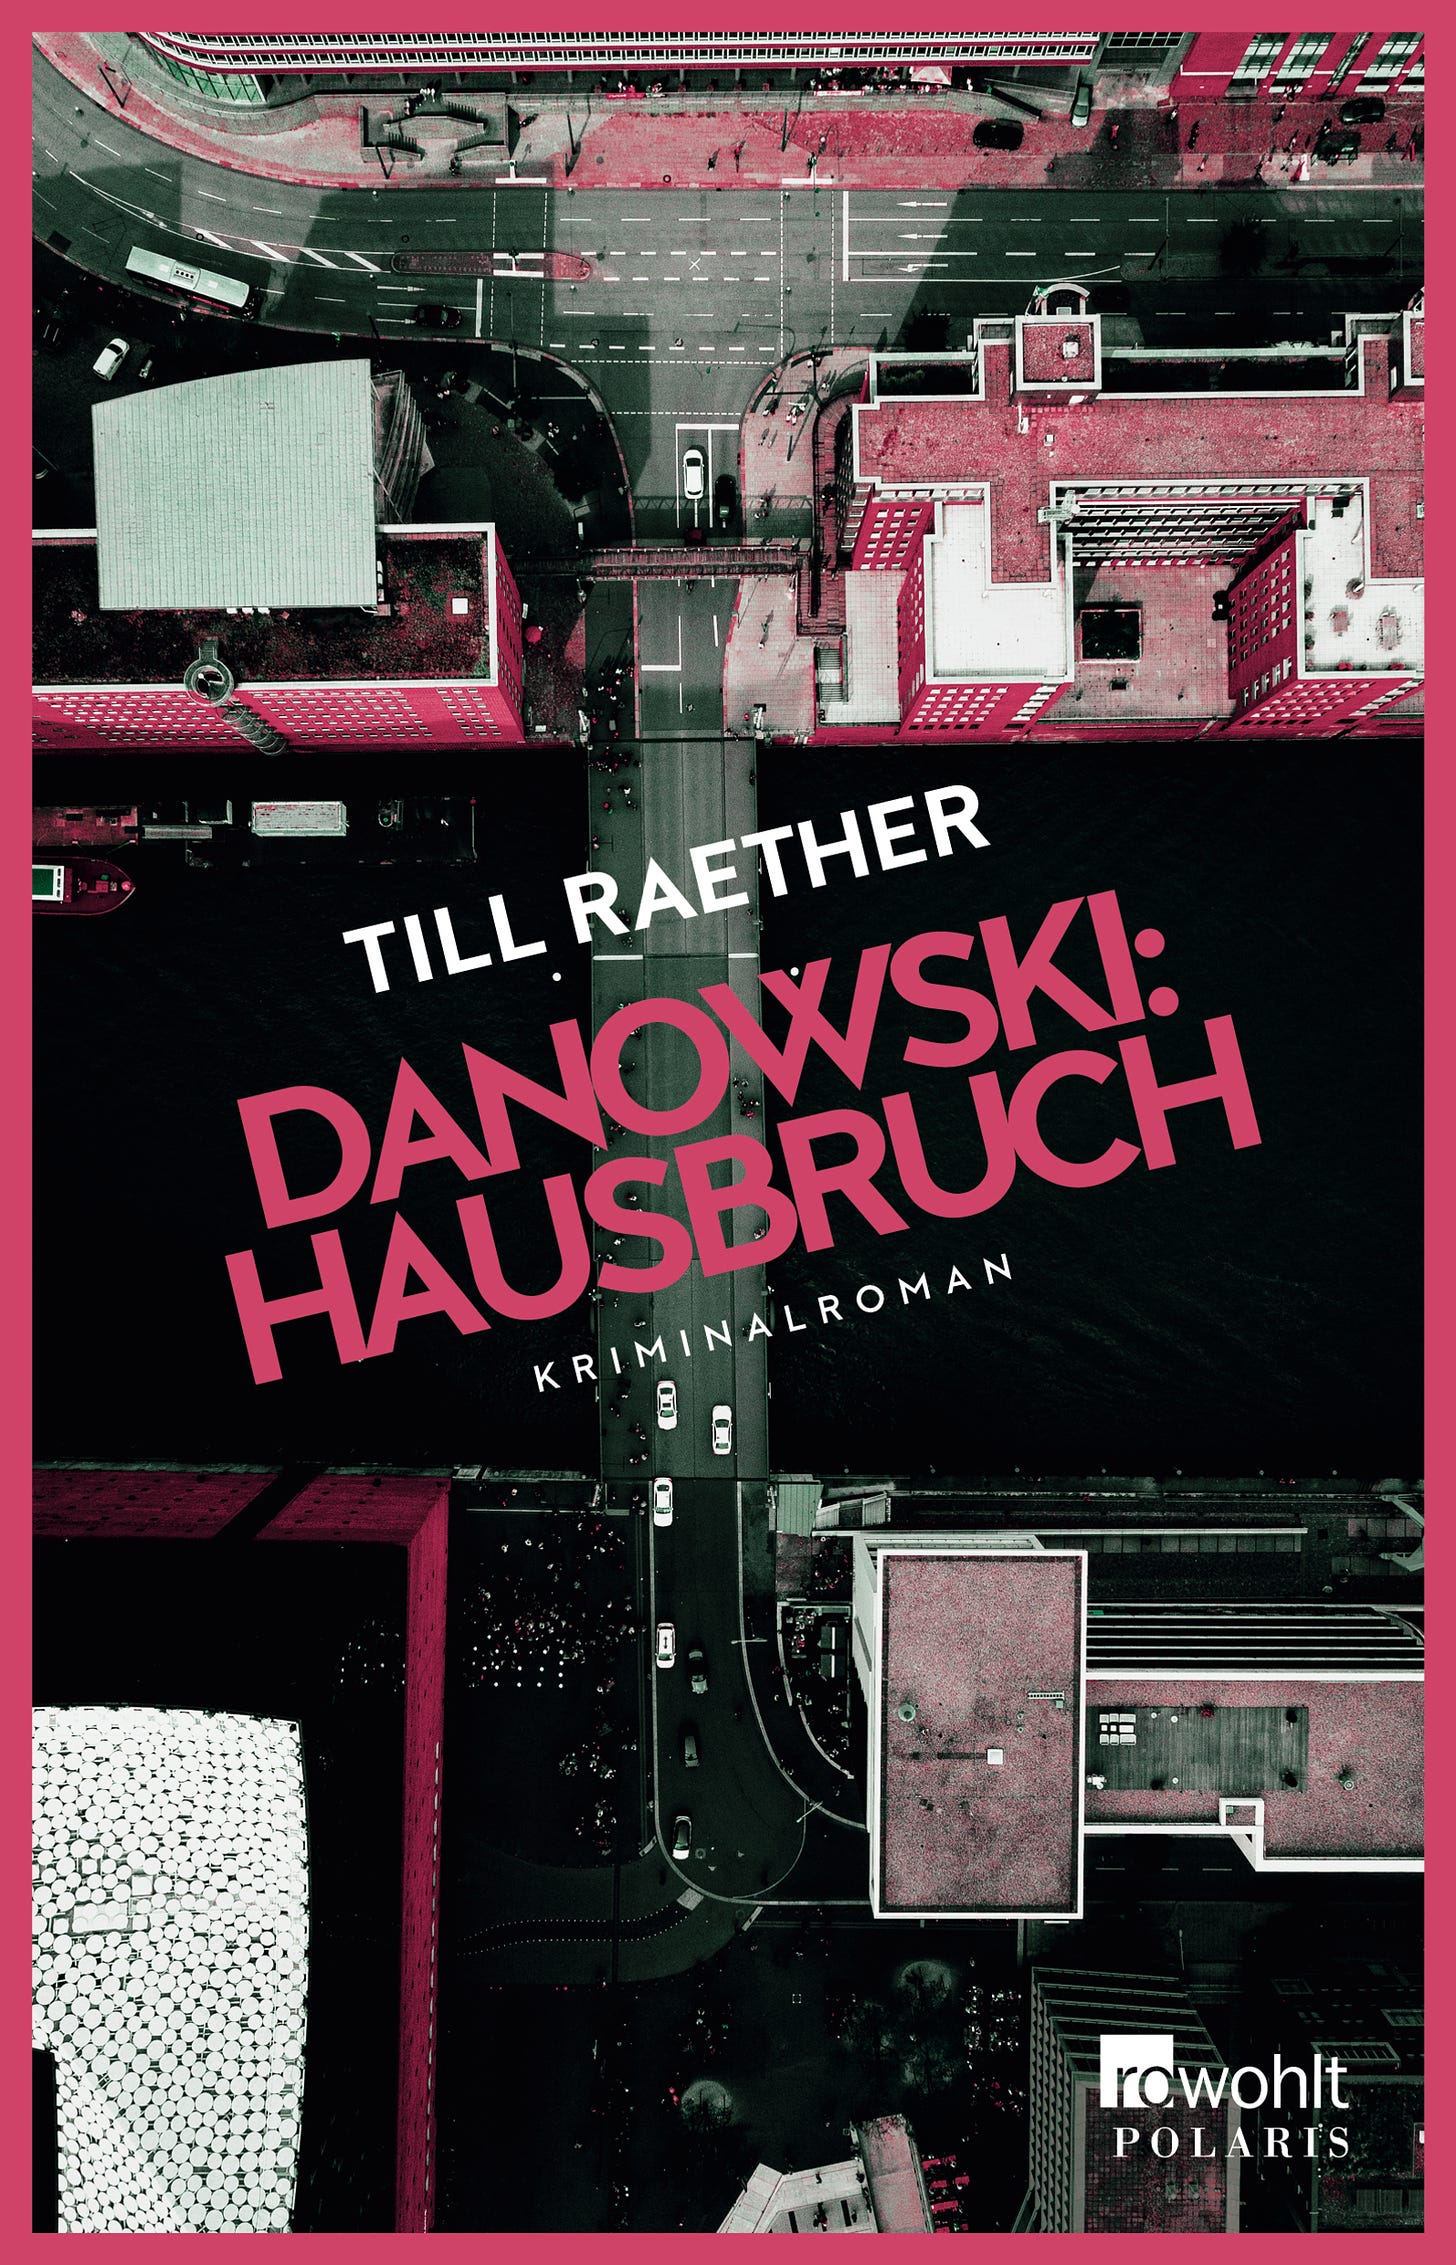 Buchcover: Till Raether "Hausbruch", Kriminalroman aus der Danowski-Reihe, Rowohlt Polaris, 2021